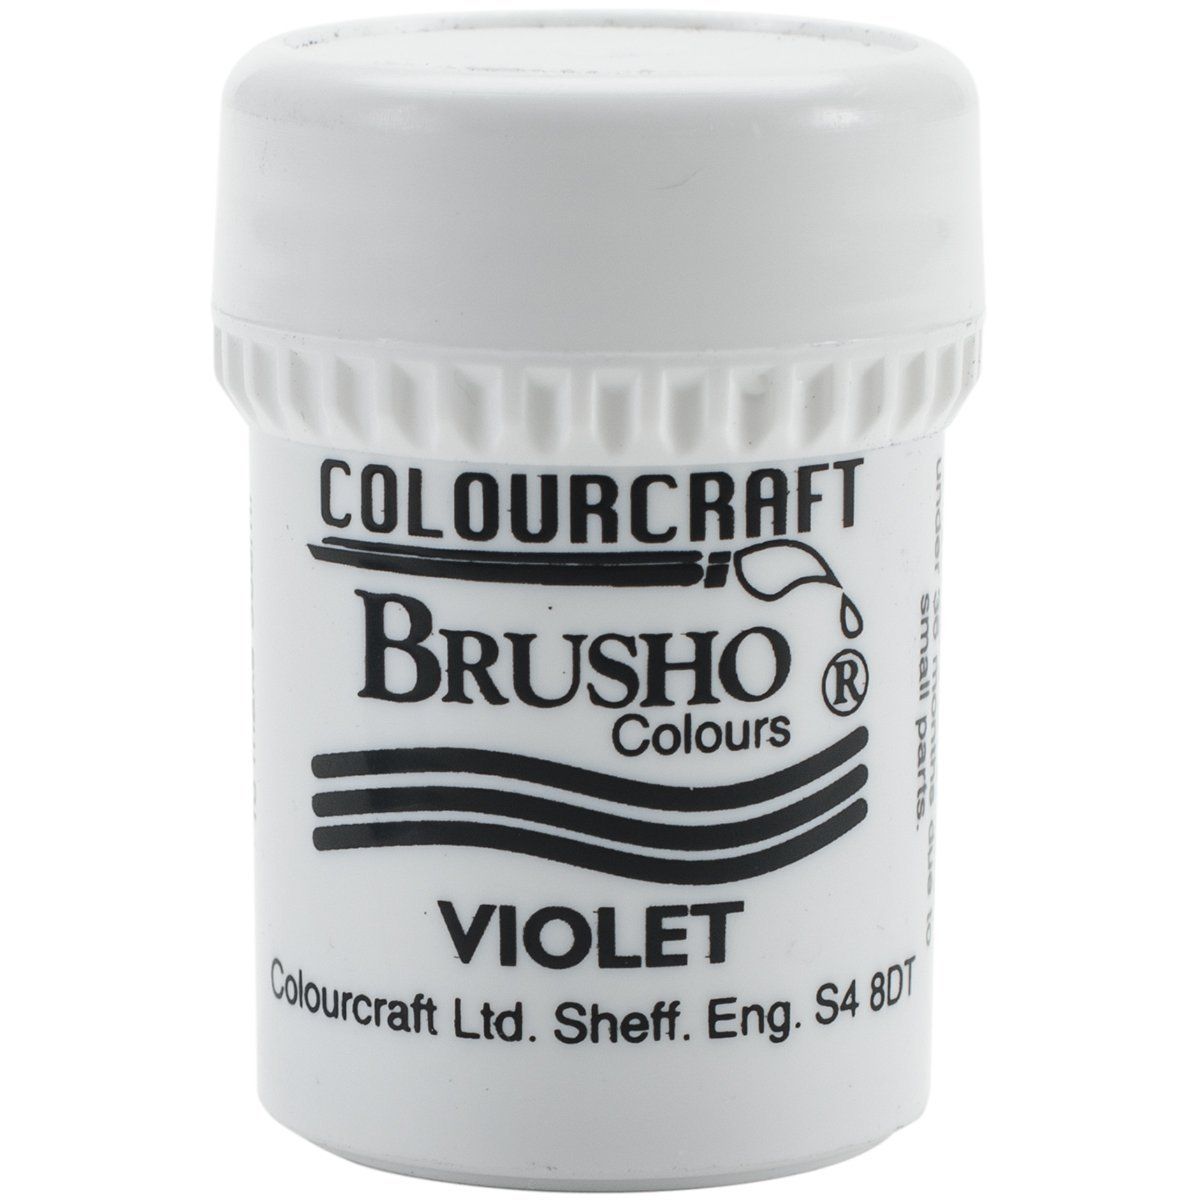 Brusho Crystal Colour - Violet 15 gm